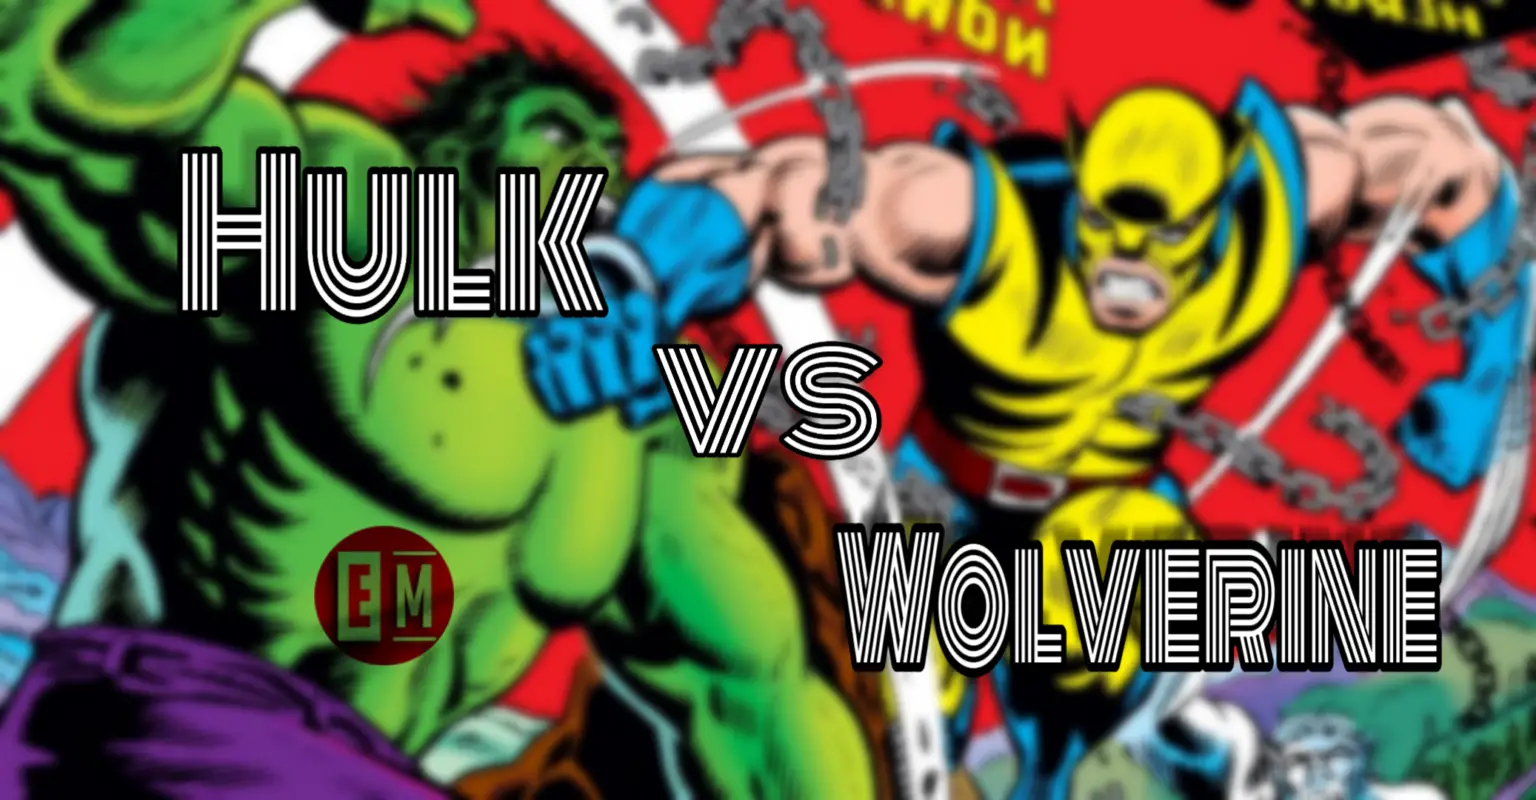 hulk vs wolverine watch free online putlocker